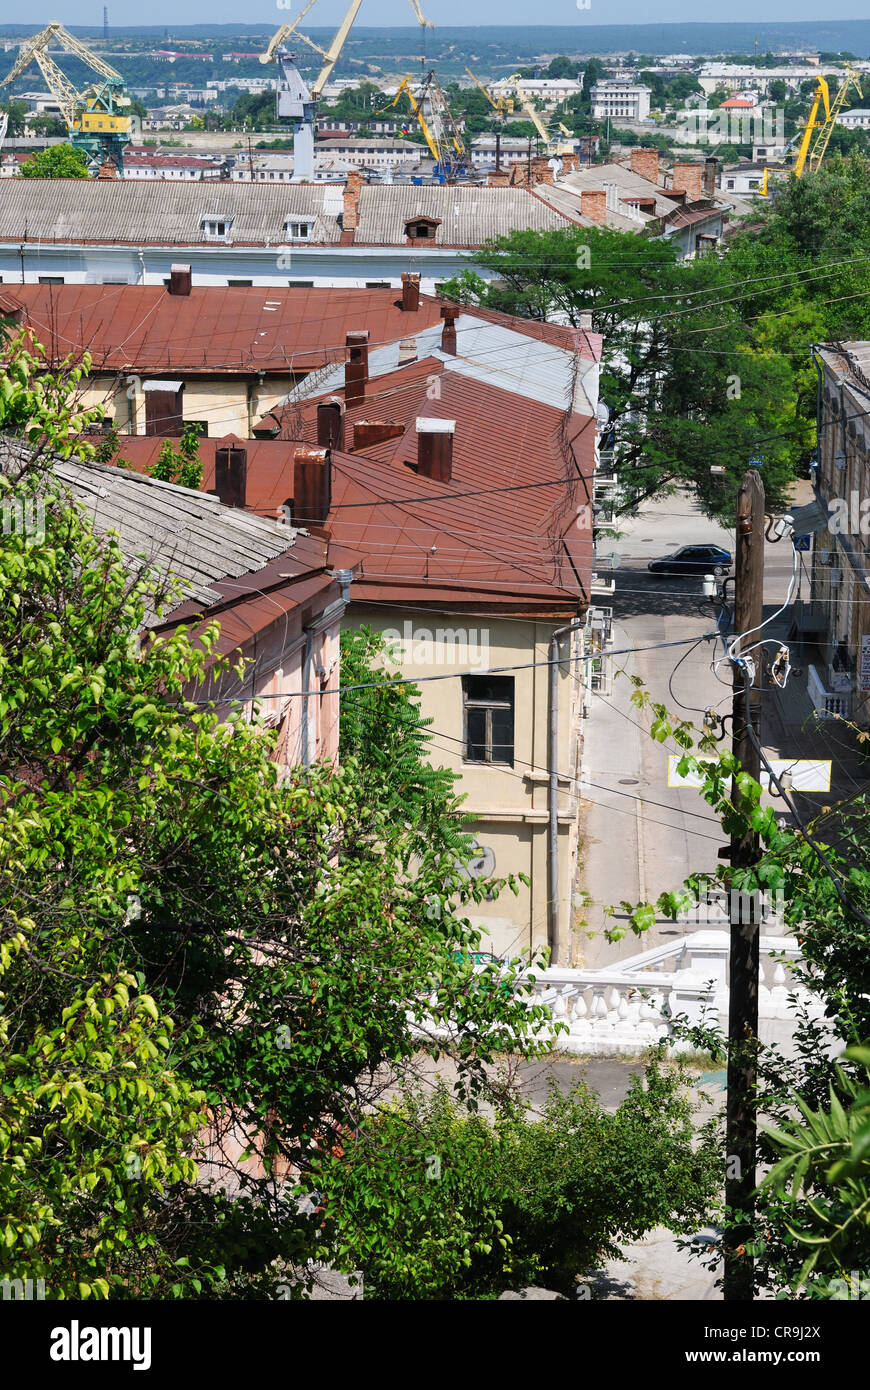 Blick auf die Stadt Sewastopol mit Dock Kran Türme im Hintergrund, Krim, Ukraine Stockfoto